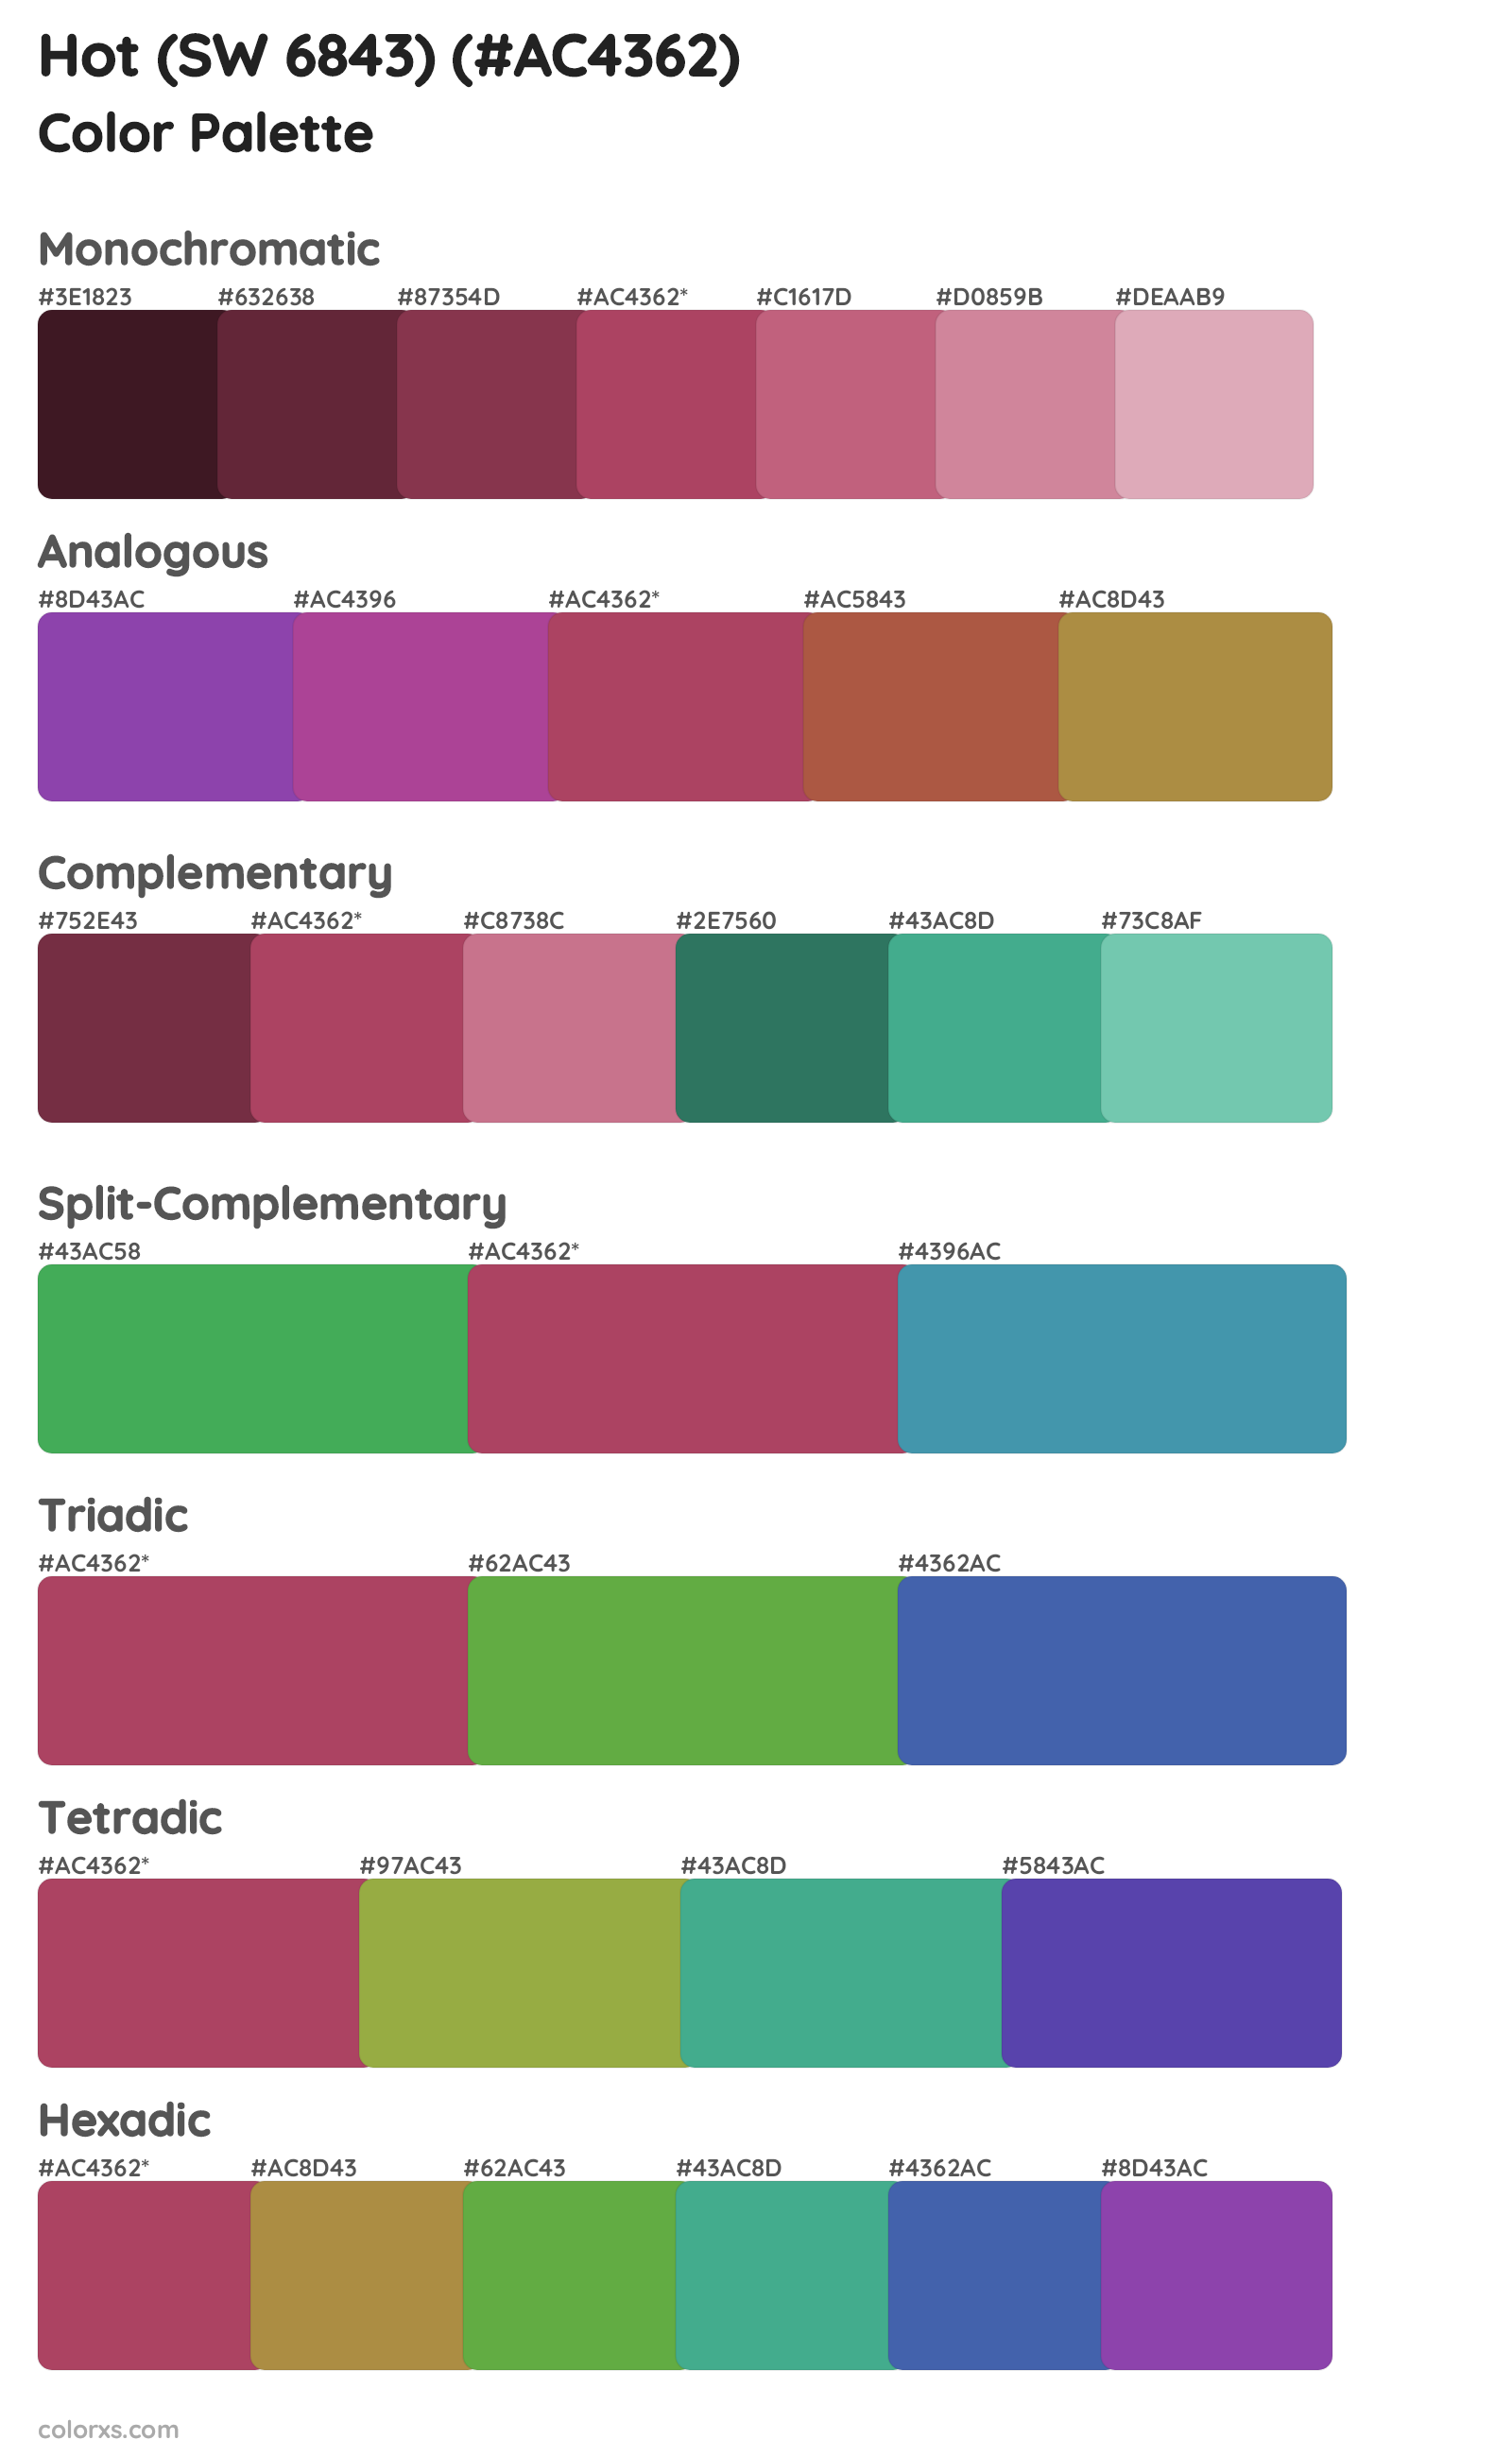 Hot (SW 6843) Color Scheme Palettes